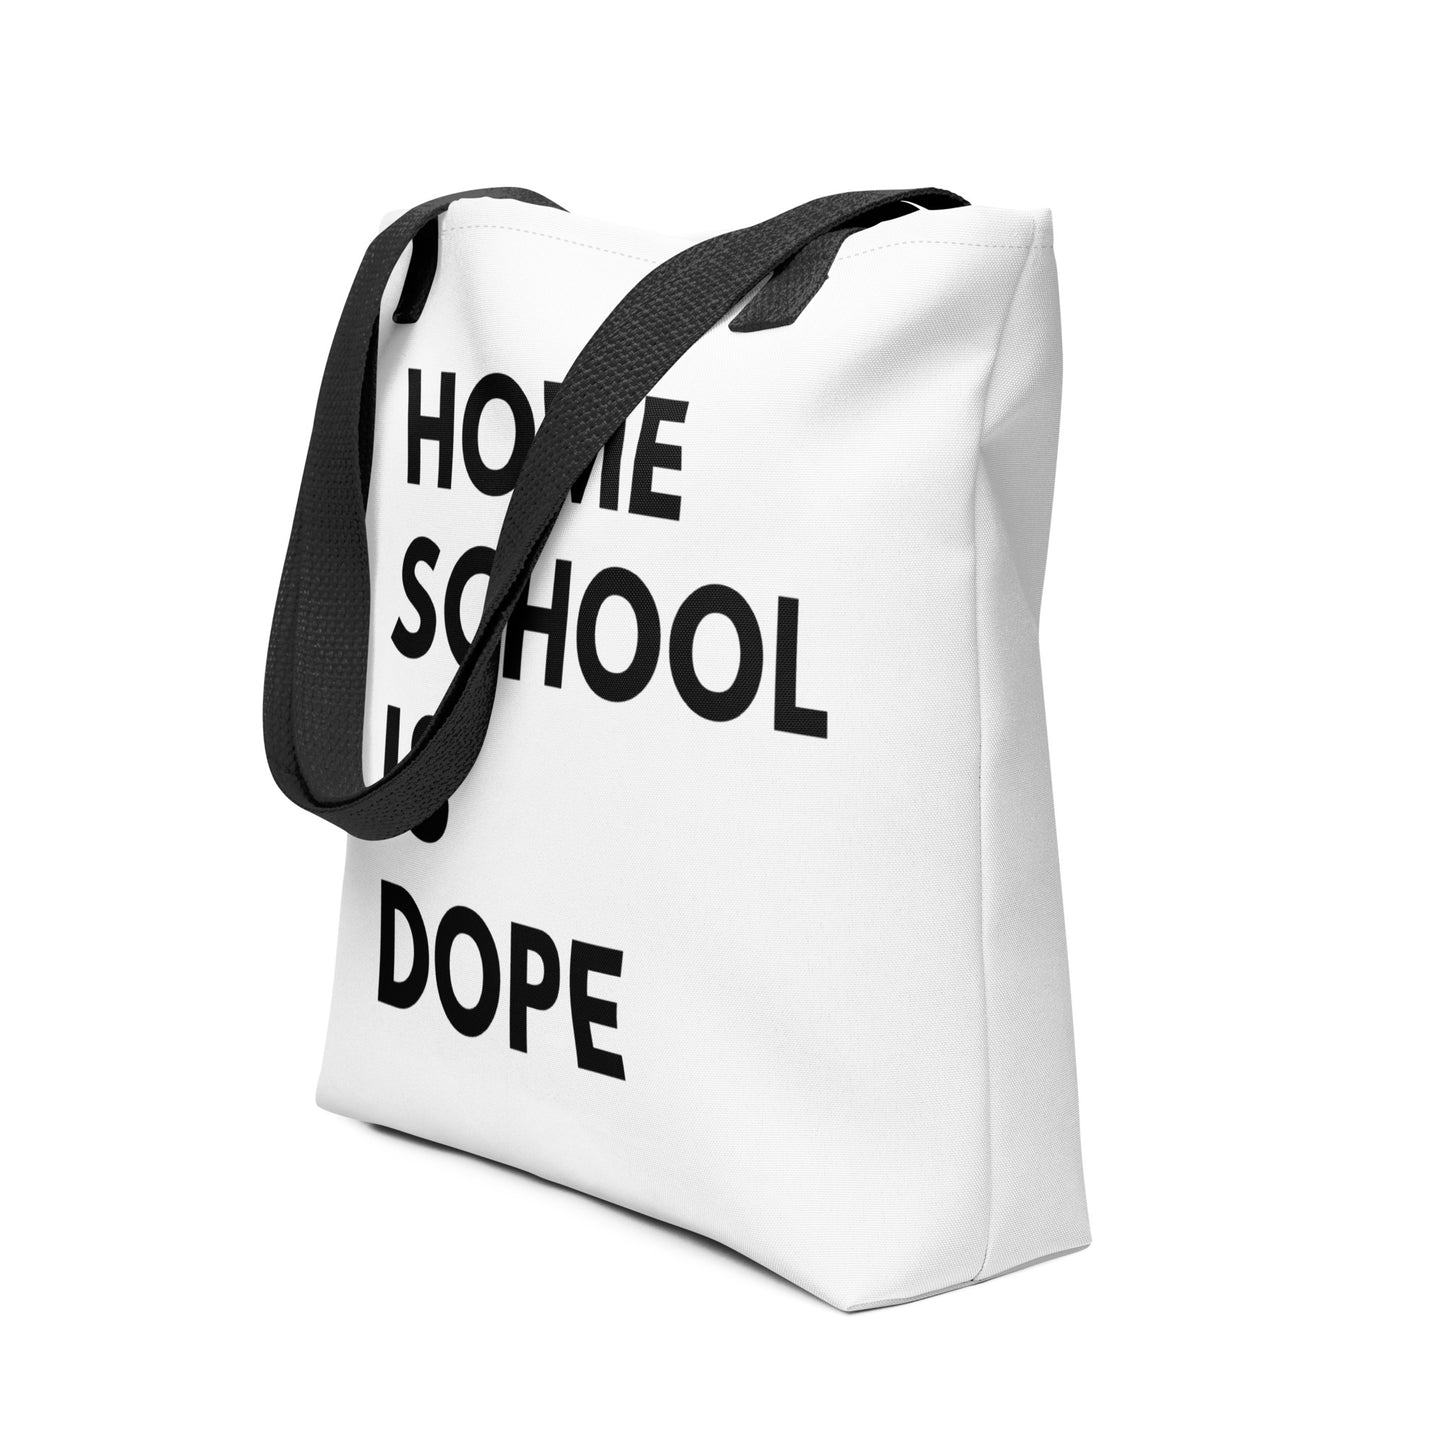 Large Tote Bag | Homeschool Is Dope